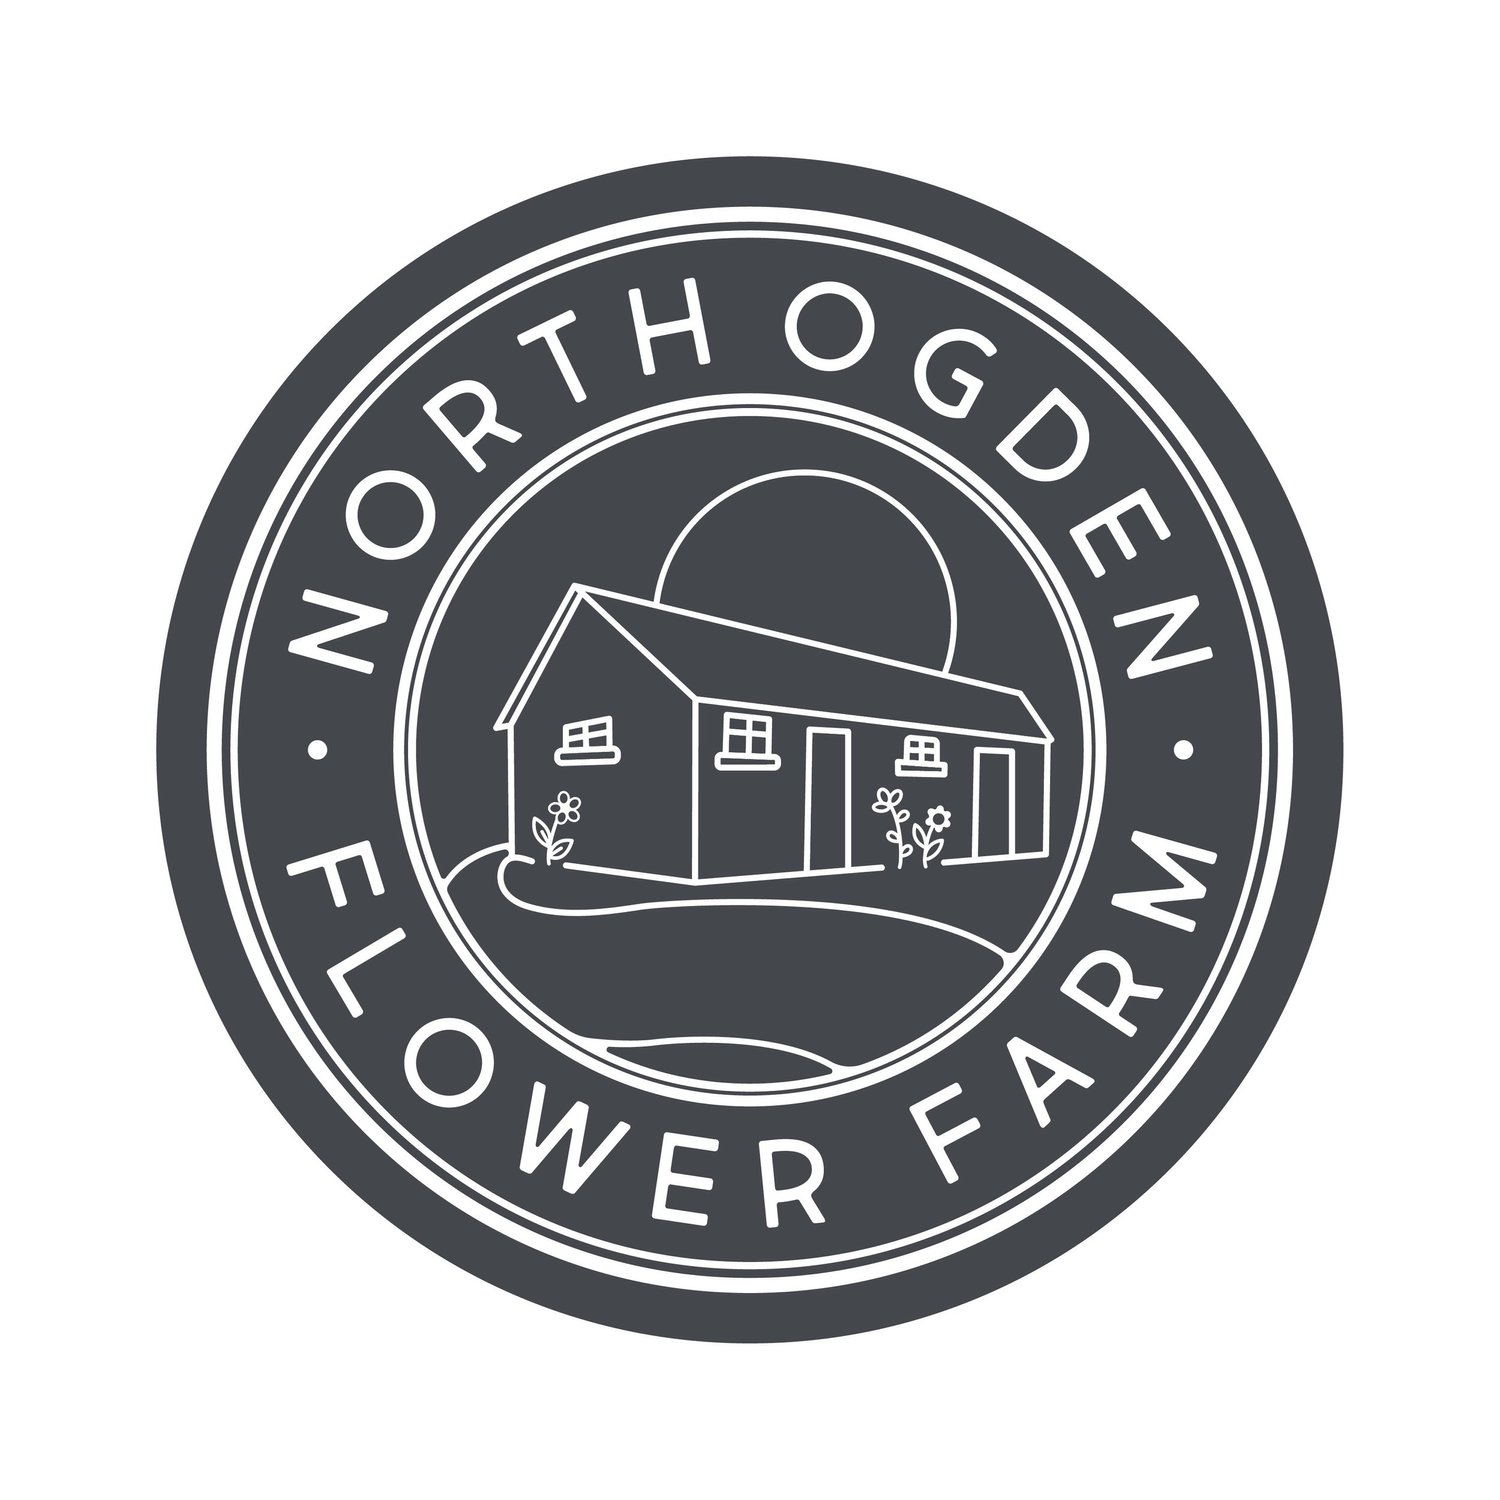 North Ogden Flower Farm